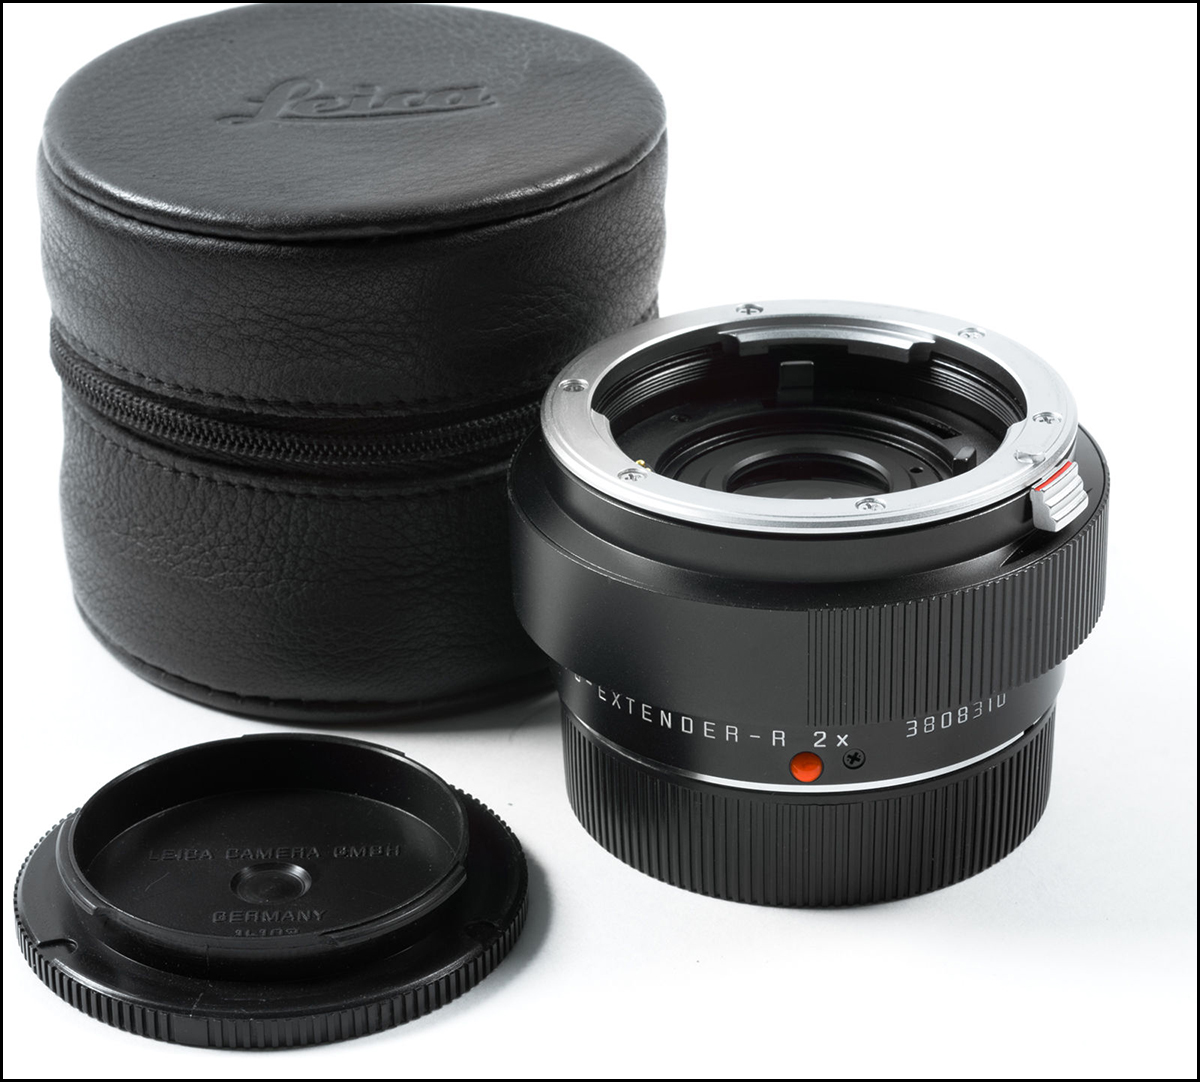 徕卡 Leica 2X APO-Extender ROM 增距镜